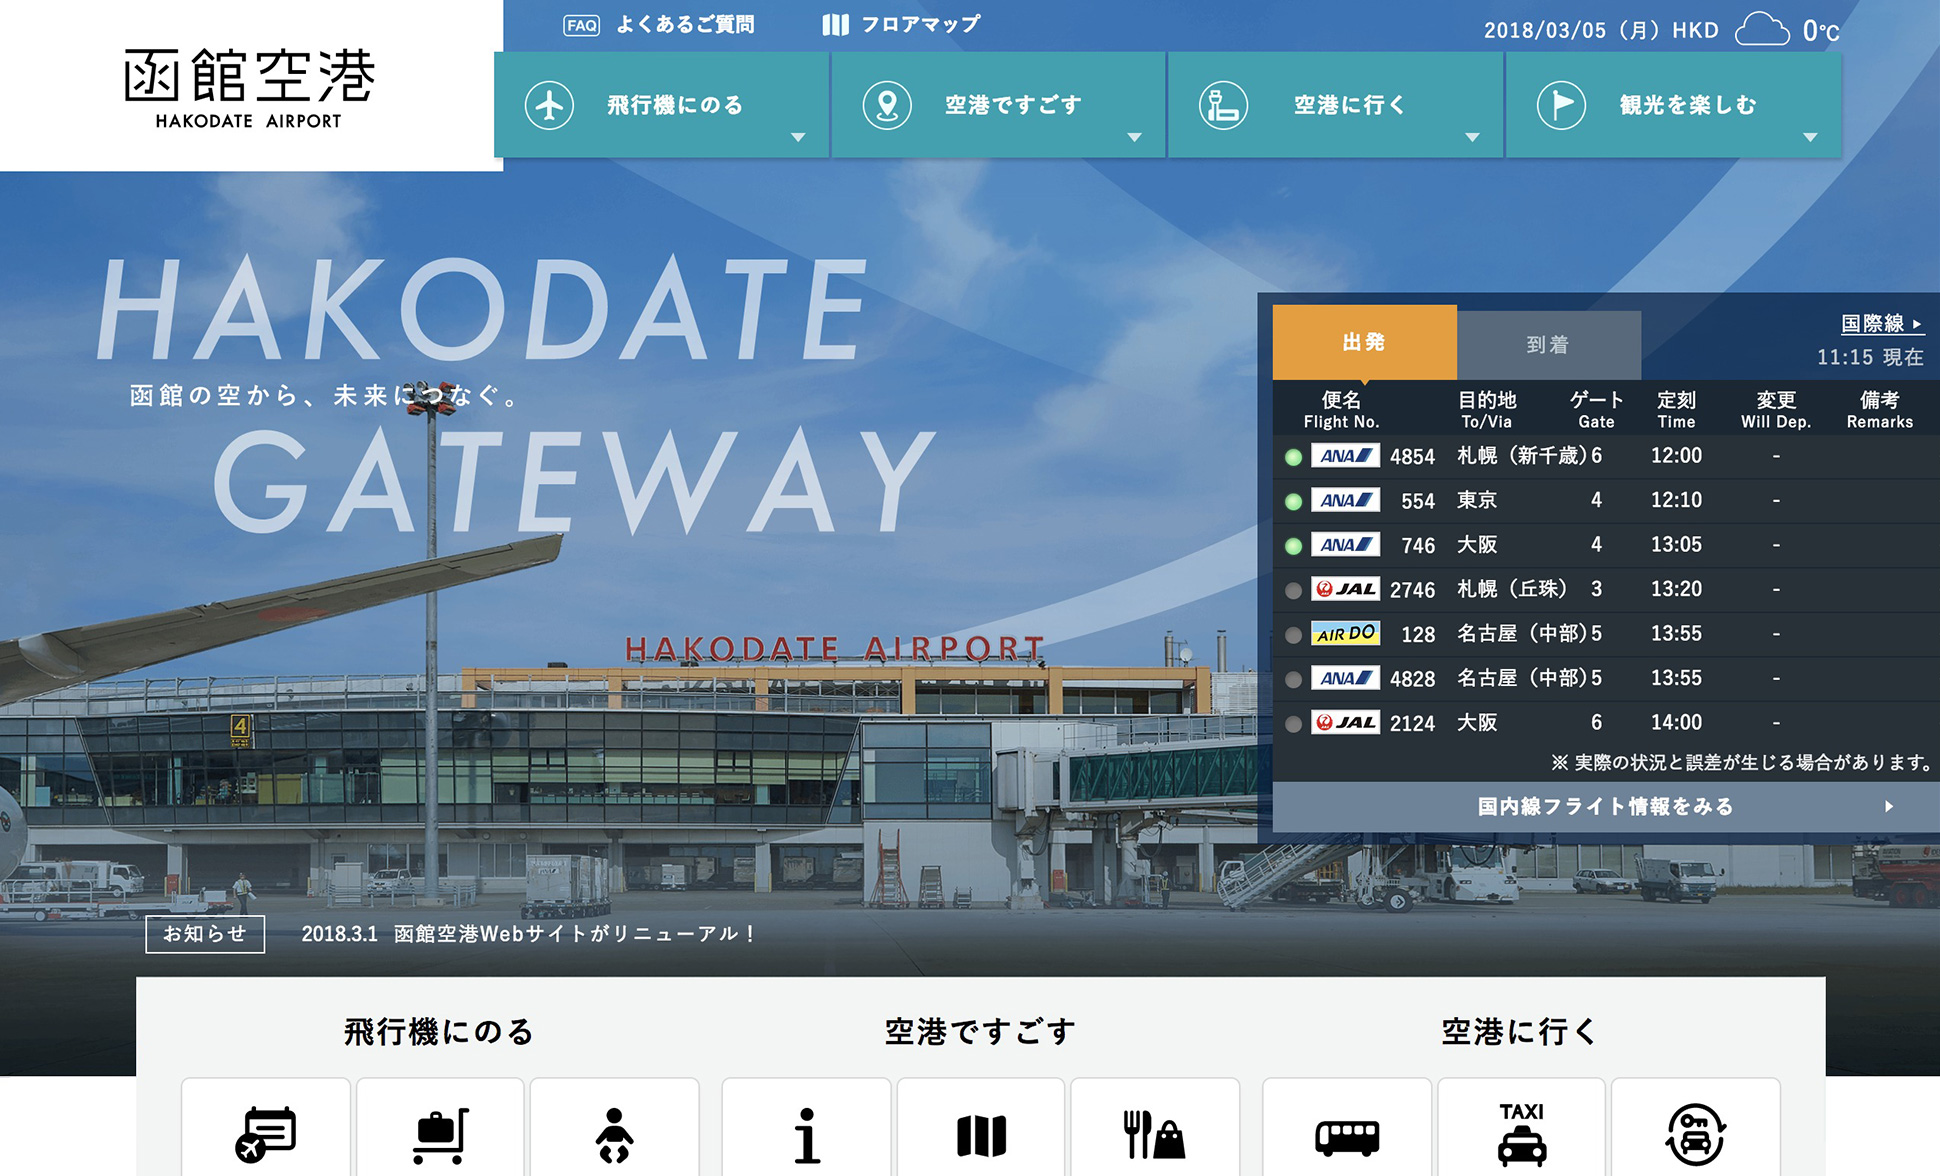 å‡½é¤¨ç©ºæ¸¯å…¬å¼webã‚µã‚¤ãƒˆ Hakodate Airport